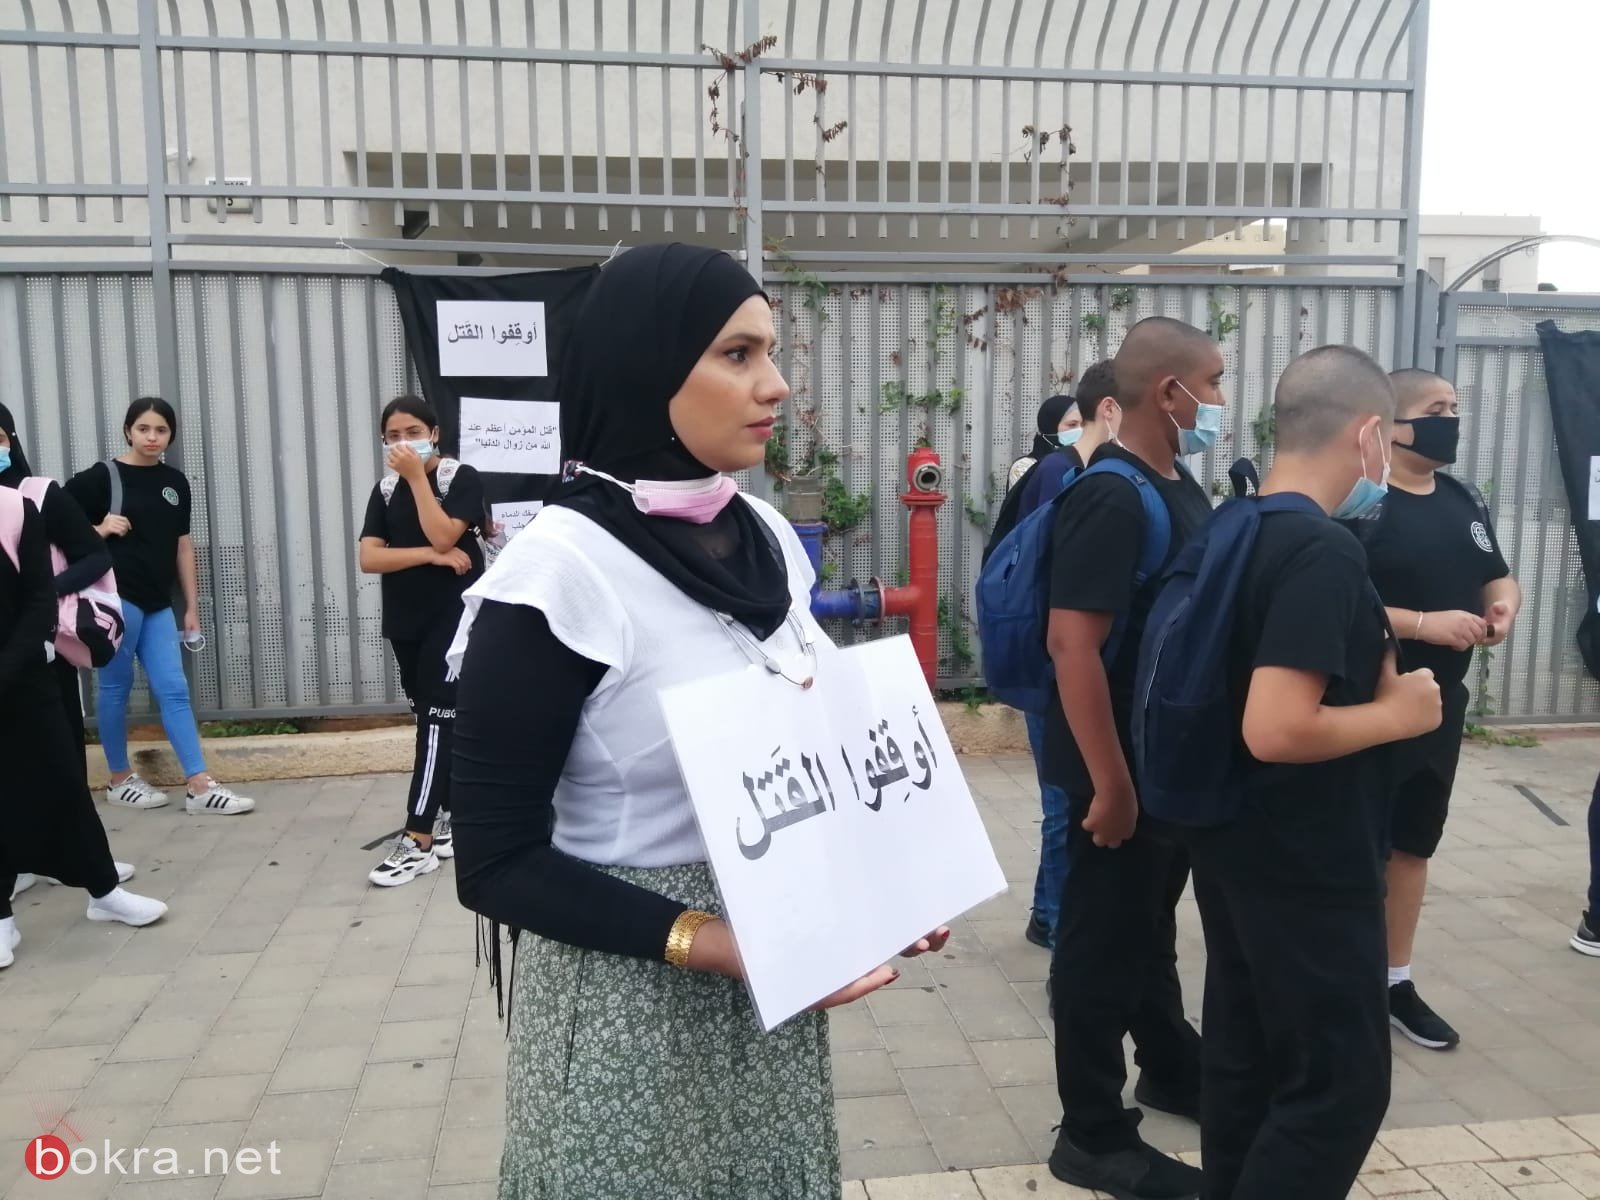 طلاب مدرسة يافا المستقبل يحتجون ضد جرائم القتل والعنف-6